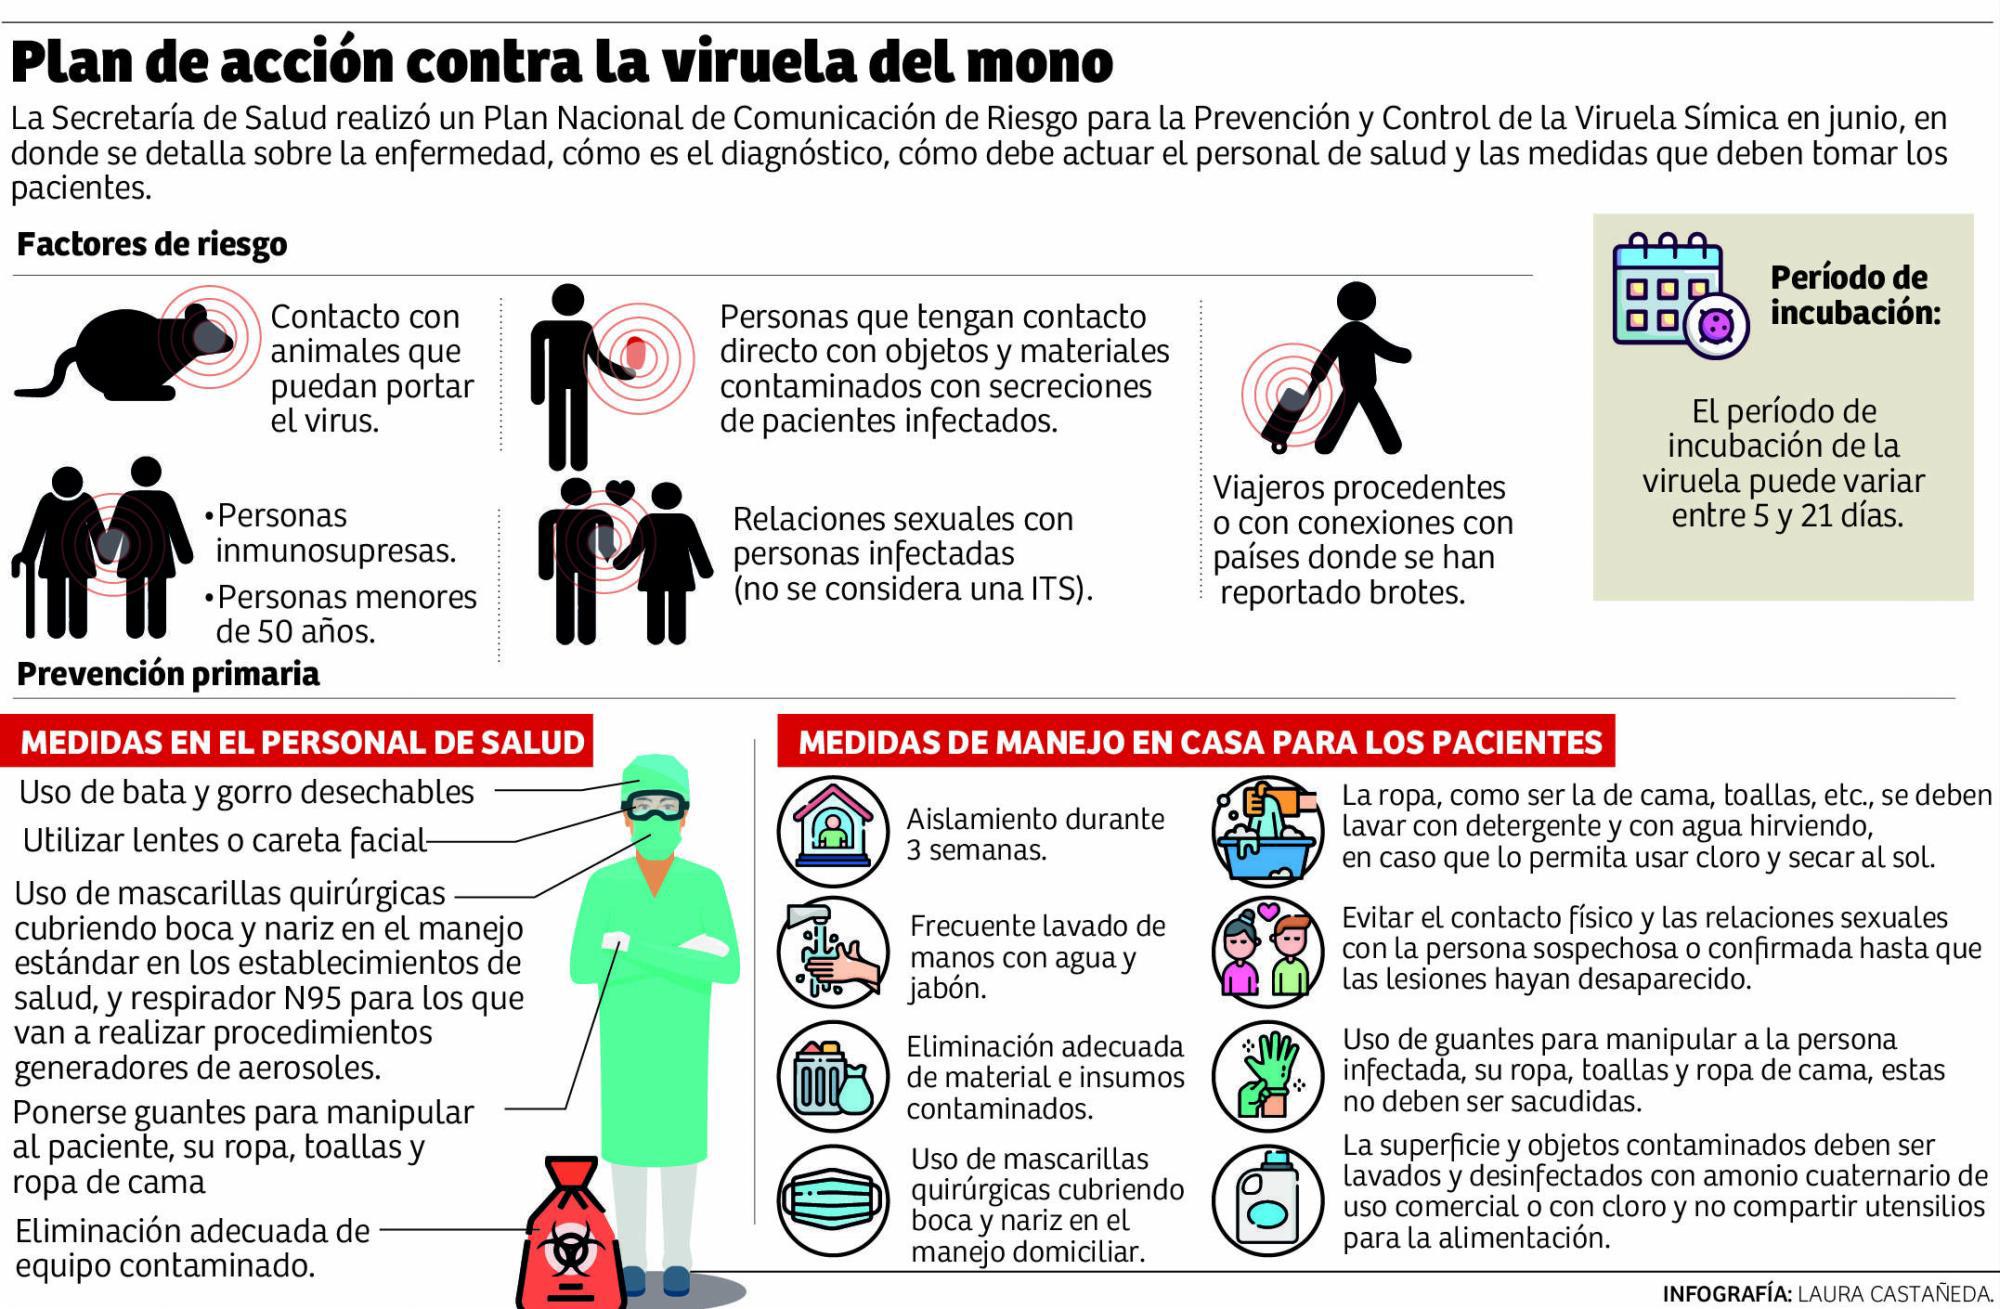 Plan de acción contra la viruela del mono. Infografía: La Prensa.